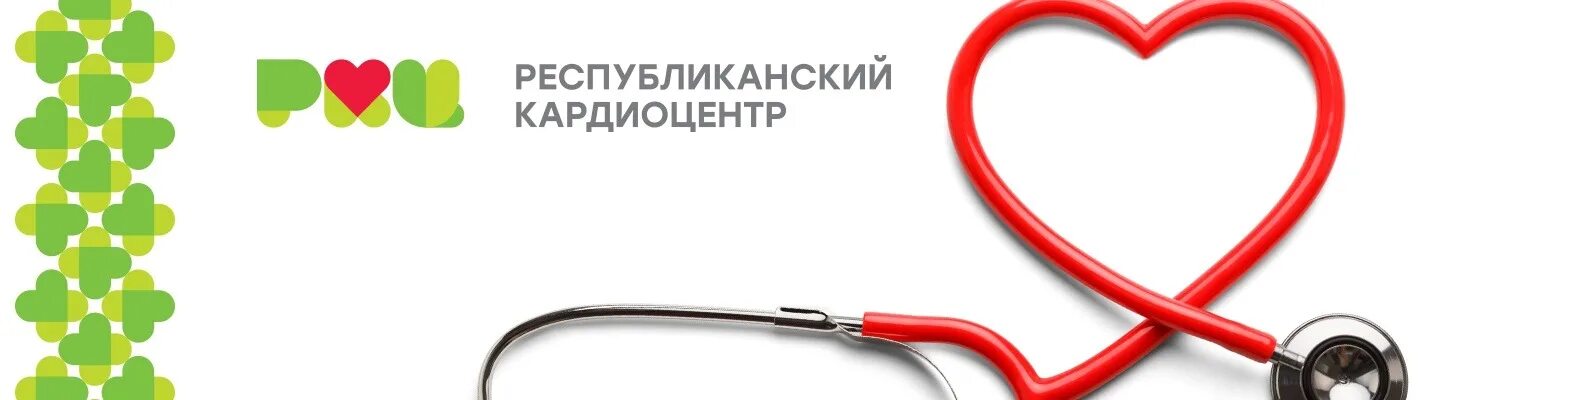 Республиканский кардиологический центр уфа. Кардиологическая больница Уфа. Логотип кардиологической клиники. Логотип Республиканский кардиологический центр.